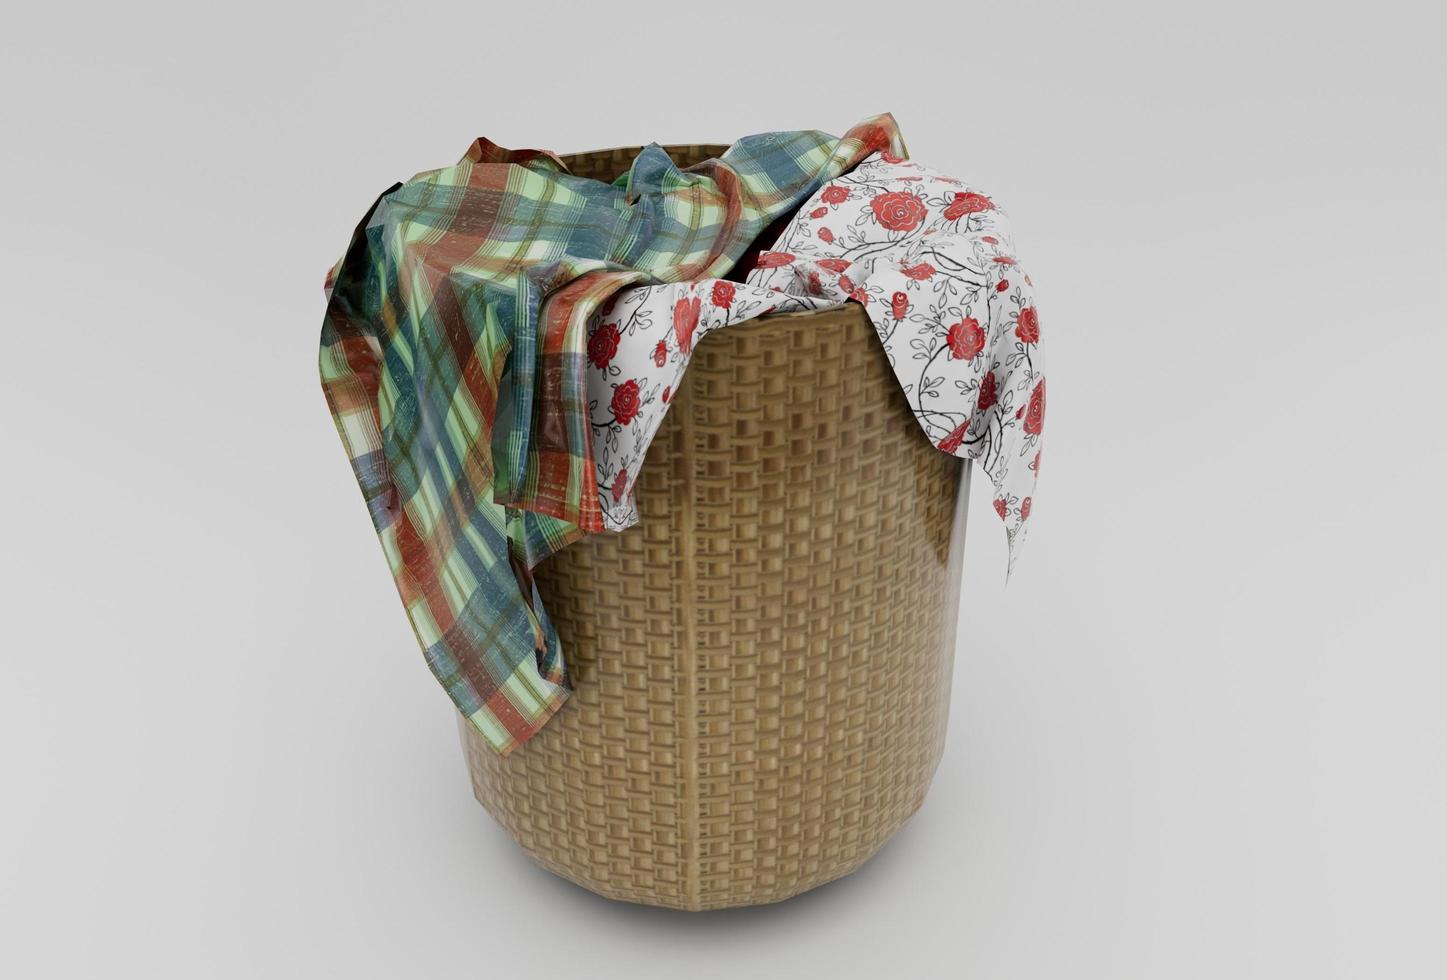 wasserij bamboe mand rieten met kleding minimaal 3d renderen Aan wit achtergrond foto